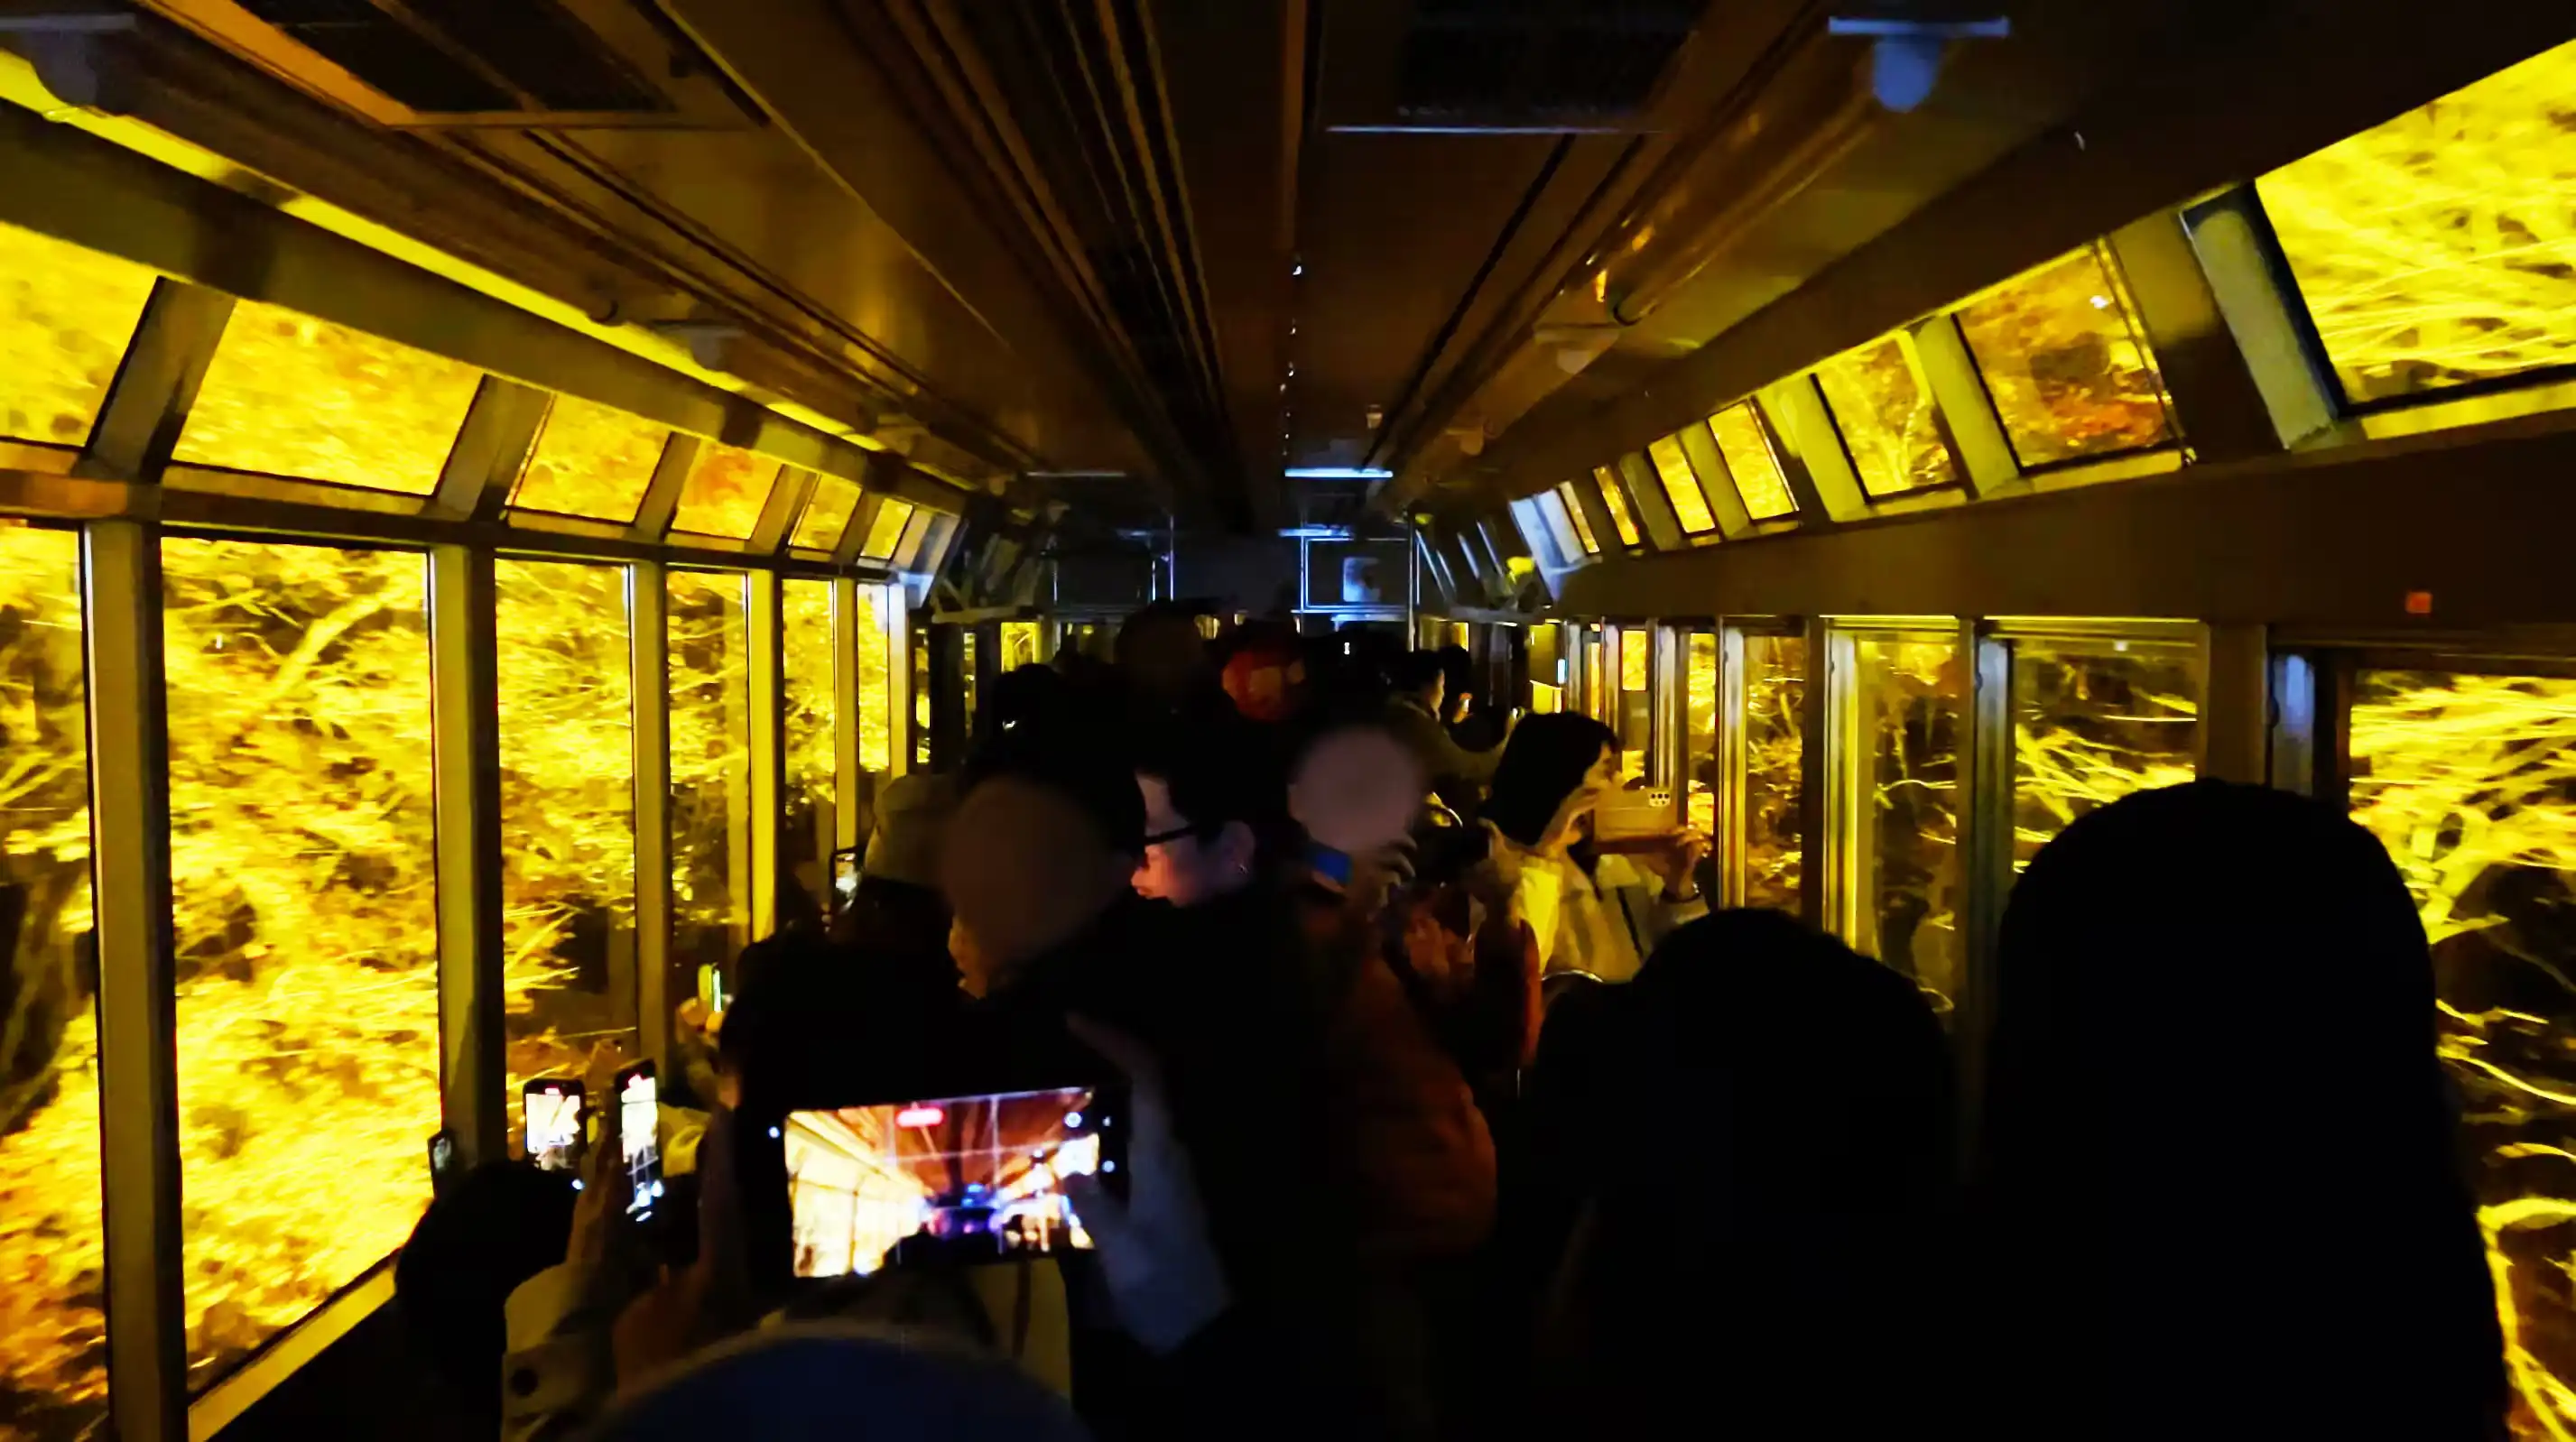 Eizan Railway's Panorama Train KIRARA passing through the illuminated maple tunnel